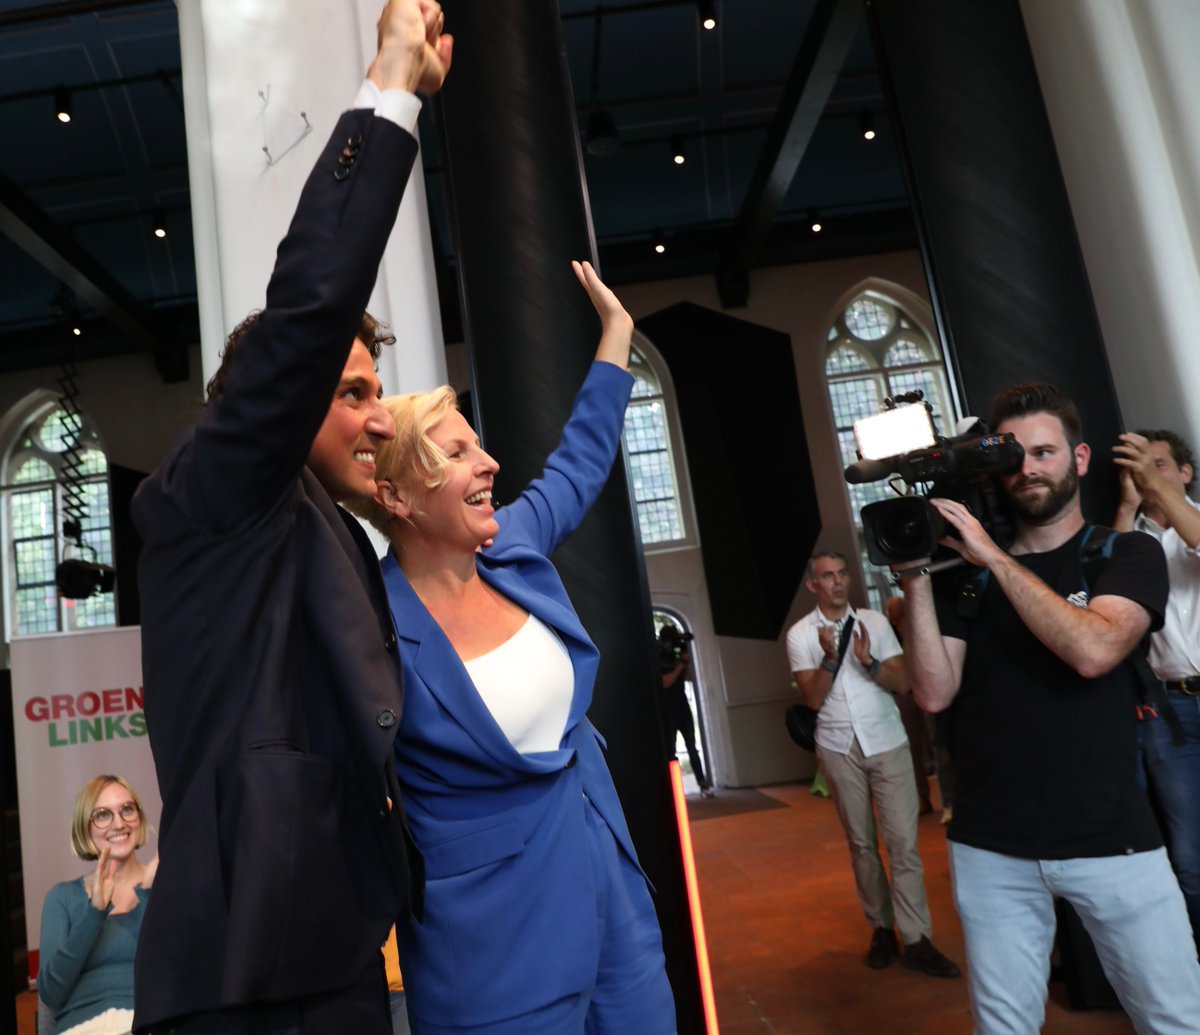 Een historisch moment: PvdA en GroenLinks gaan met een gezamenlijke lijst en verkiezingsprogramma de Tweede Kamerverkiezingen in! ❤️💚 Samen gaan we voor een sociaal, groen, en eerlijk Nederland. Wij zijn er klaar voor!